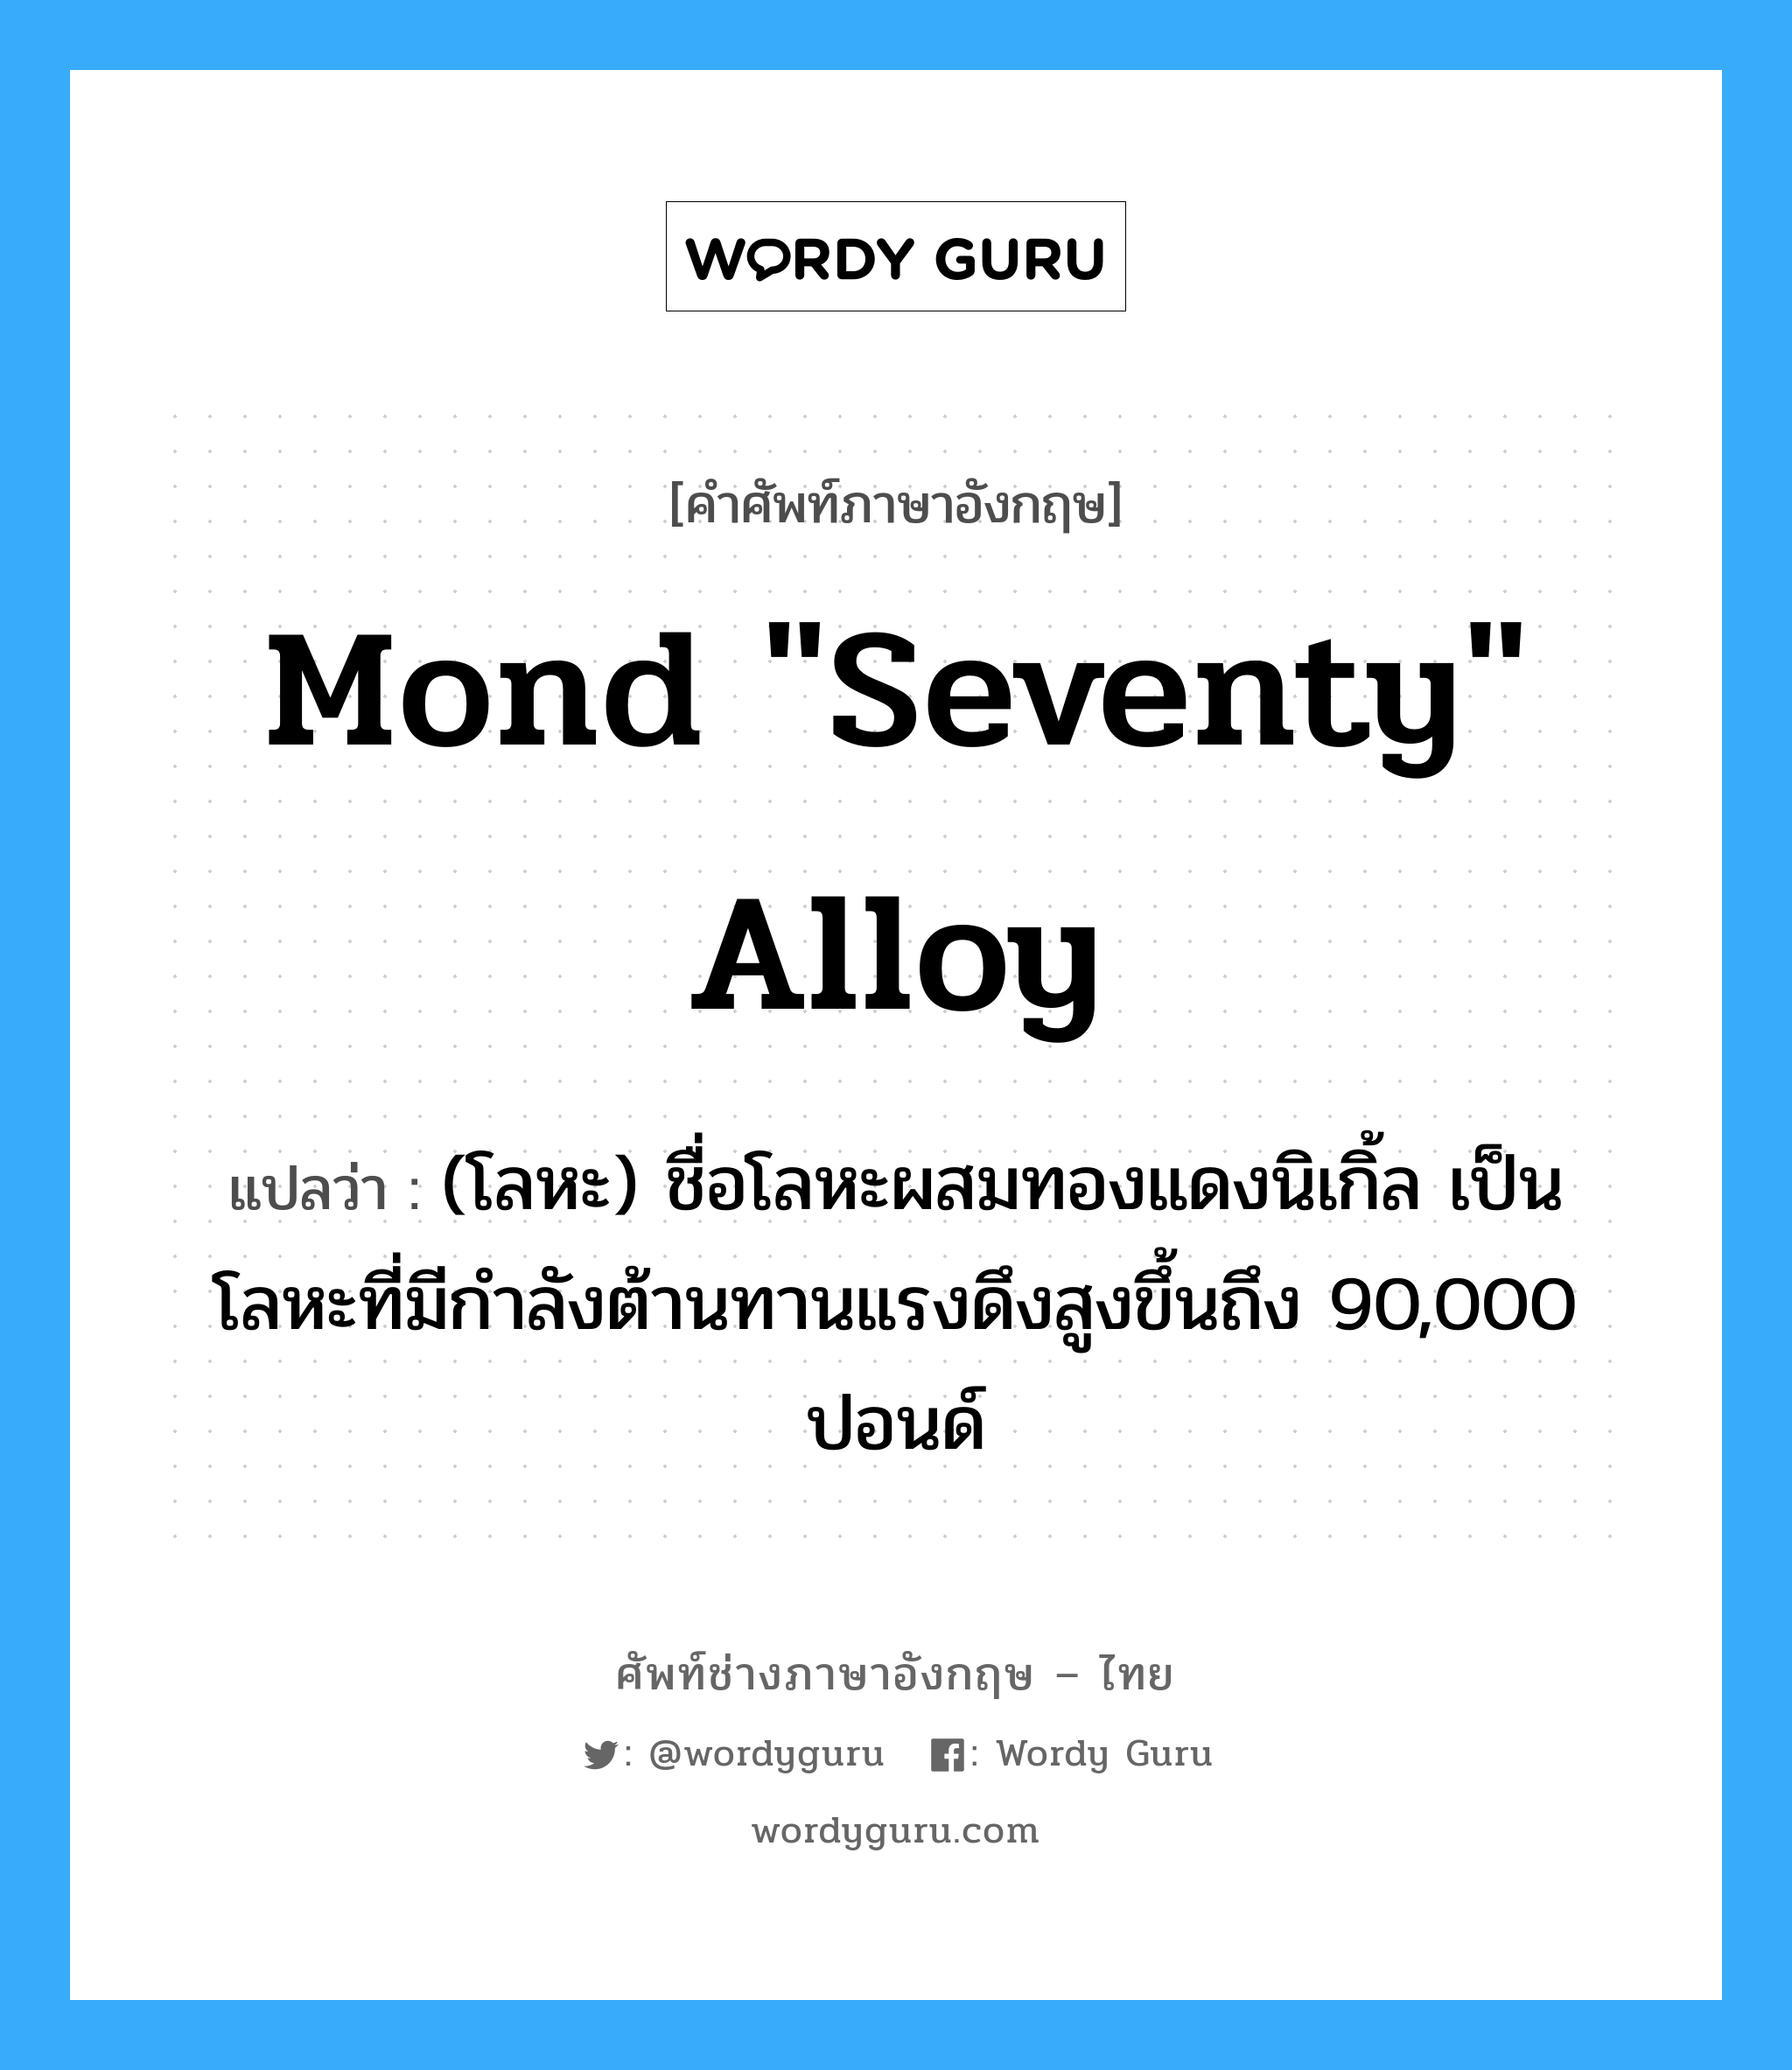 Mond "seventy" alloy แปลว่า?, คำศัพท์ช่างภาษาอังกฤษ - ไทย Mond "seventy" alloy คำศัพท์ภาษาอังกฤษ Mond "seventy" alloy แปลว่า (โลหะ) ชื่อโลหะผสมทองแดงนิเกิ้ล เป็นโลหะที่มีกำลังต้านทานแรงดึงสูงขึ้นถึง 90,000 ปอนด์